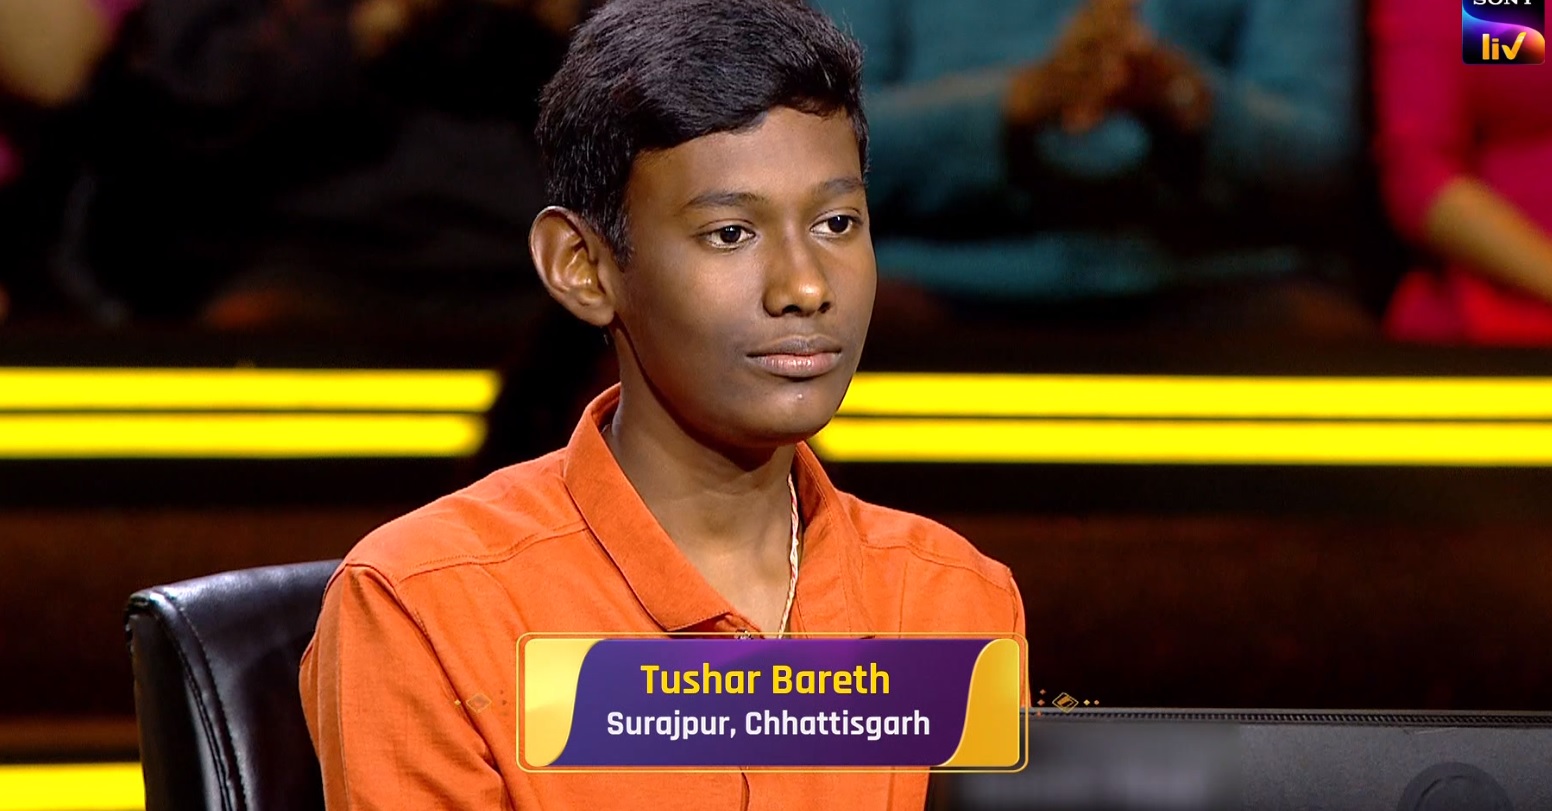 Tushar Bareth